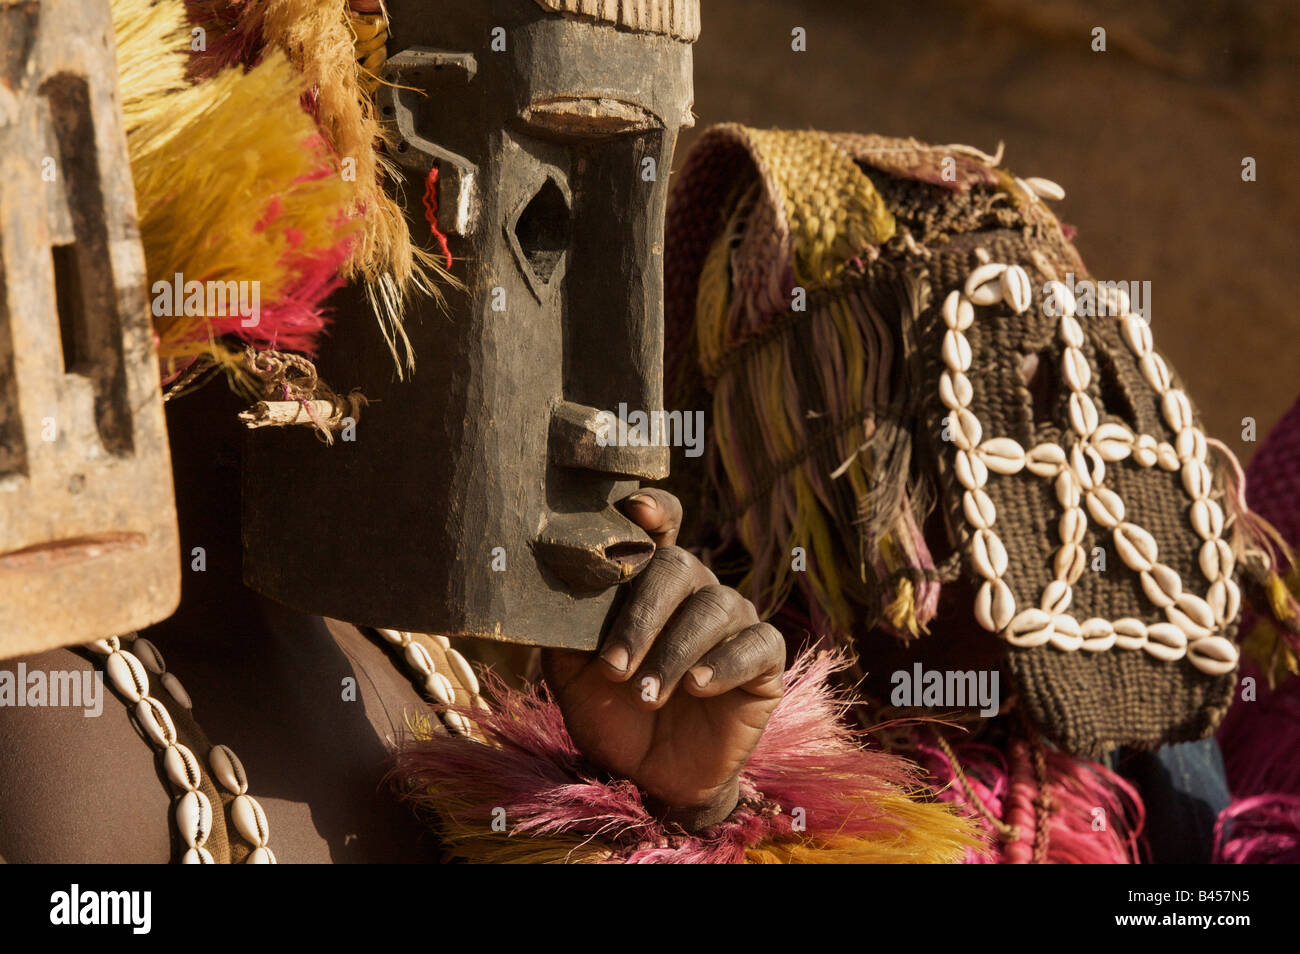 La danse masquée dans tereli, pays dogon, Mali, Afrique de l'ouest Banque D'Images